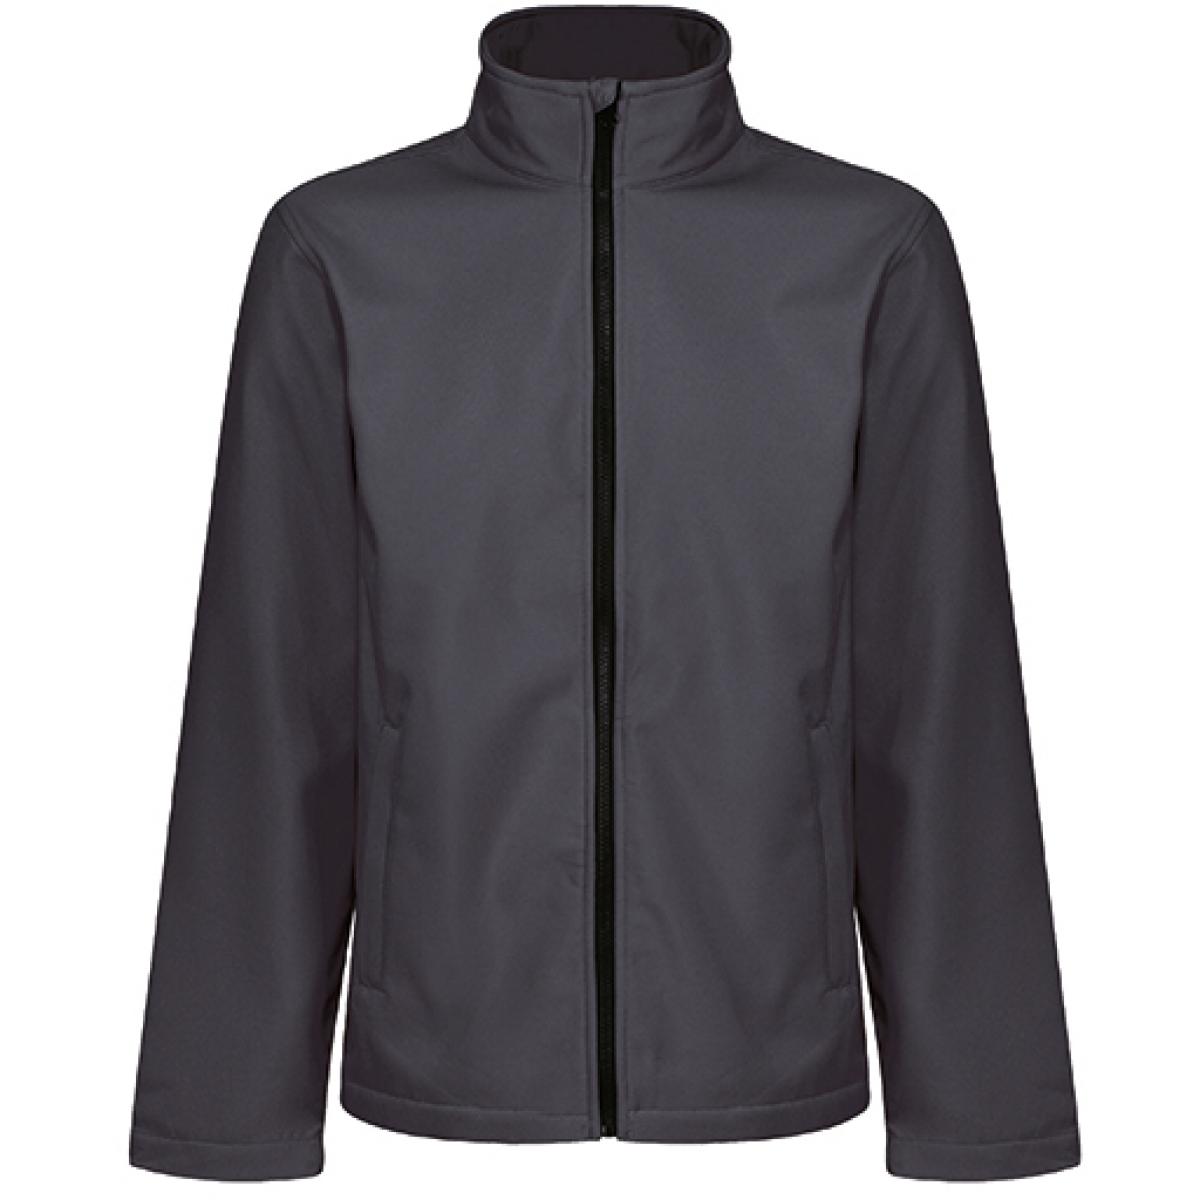 Hersteller: Regatta Professional Herstellernummer: TRA728 Artikelbezeichnung: Eco Ablaze Softshell Jacke Farbe: Seal Grey/Black